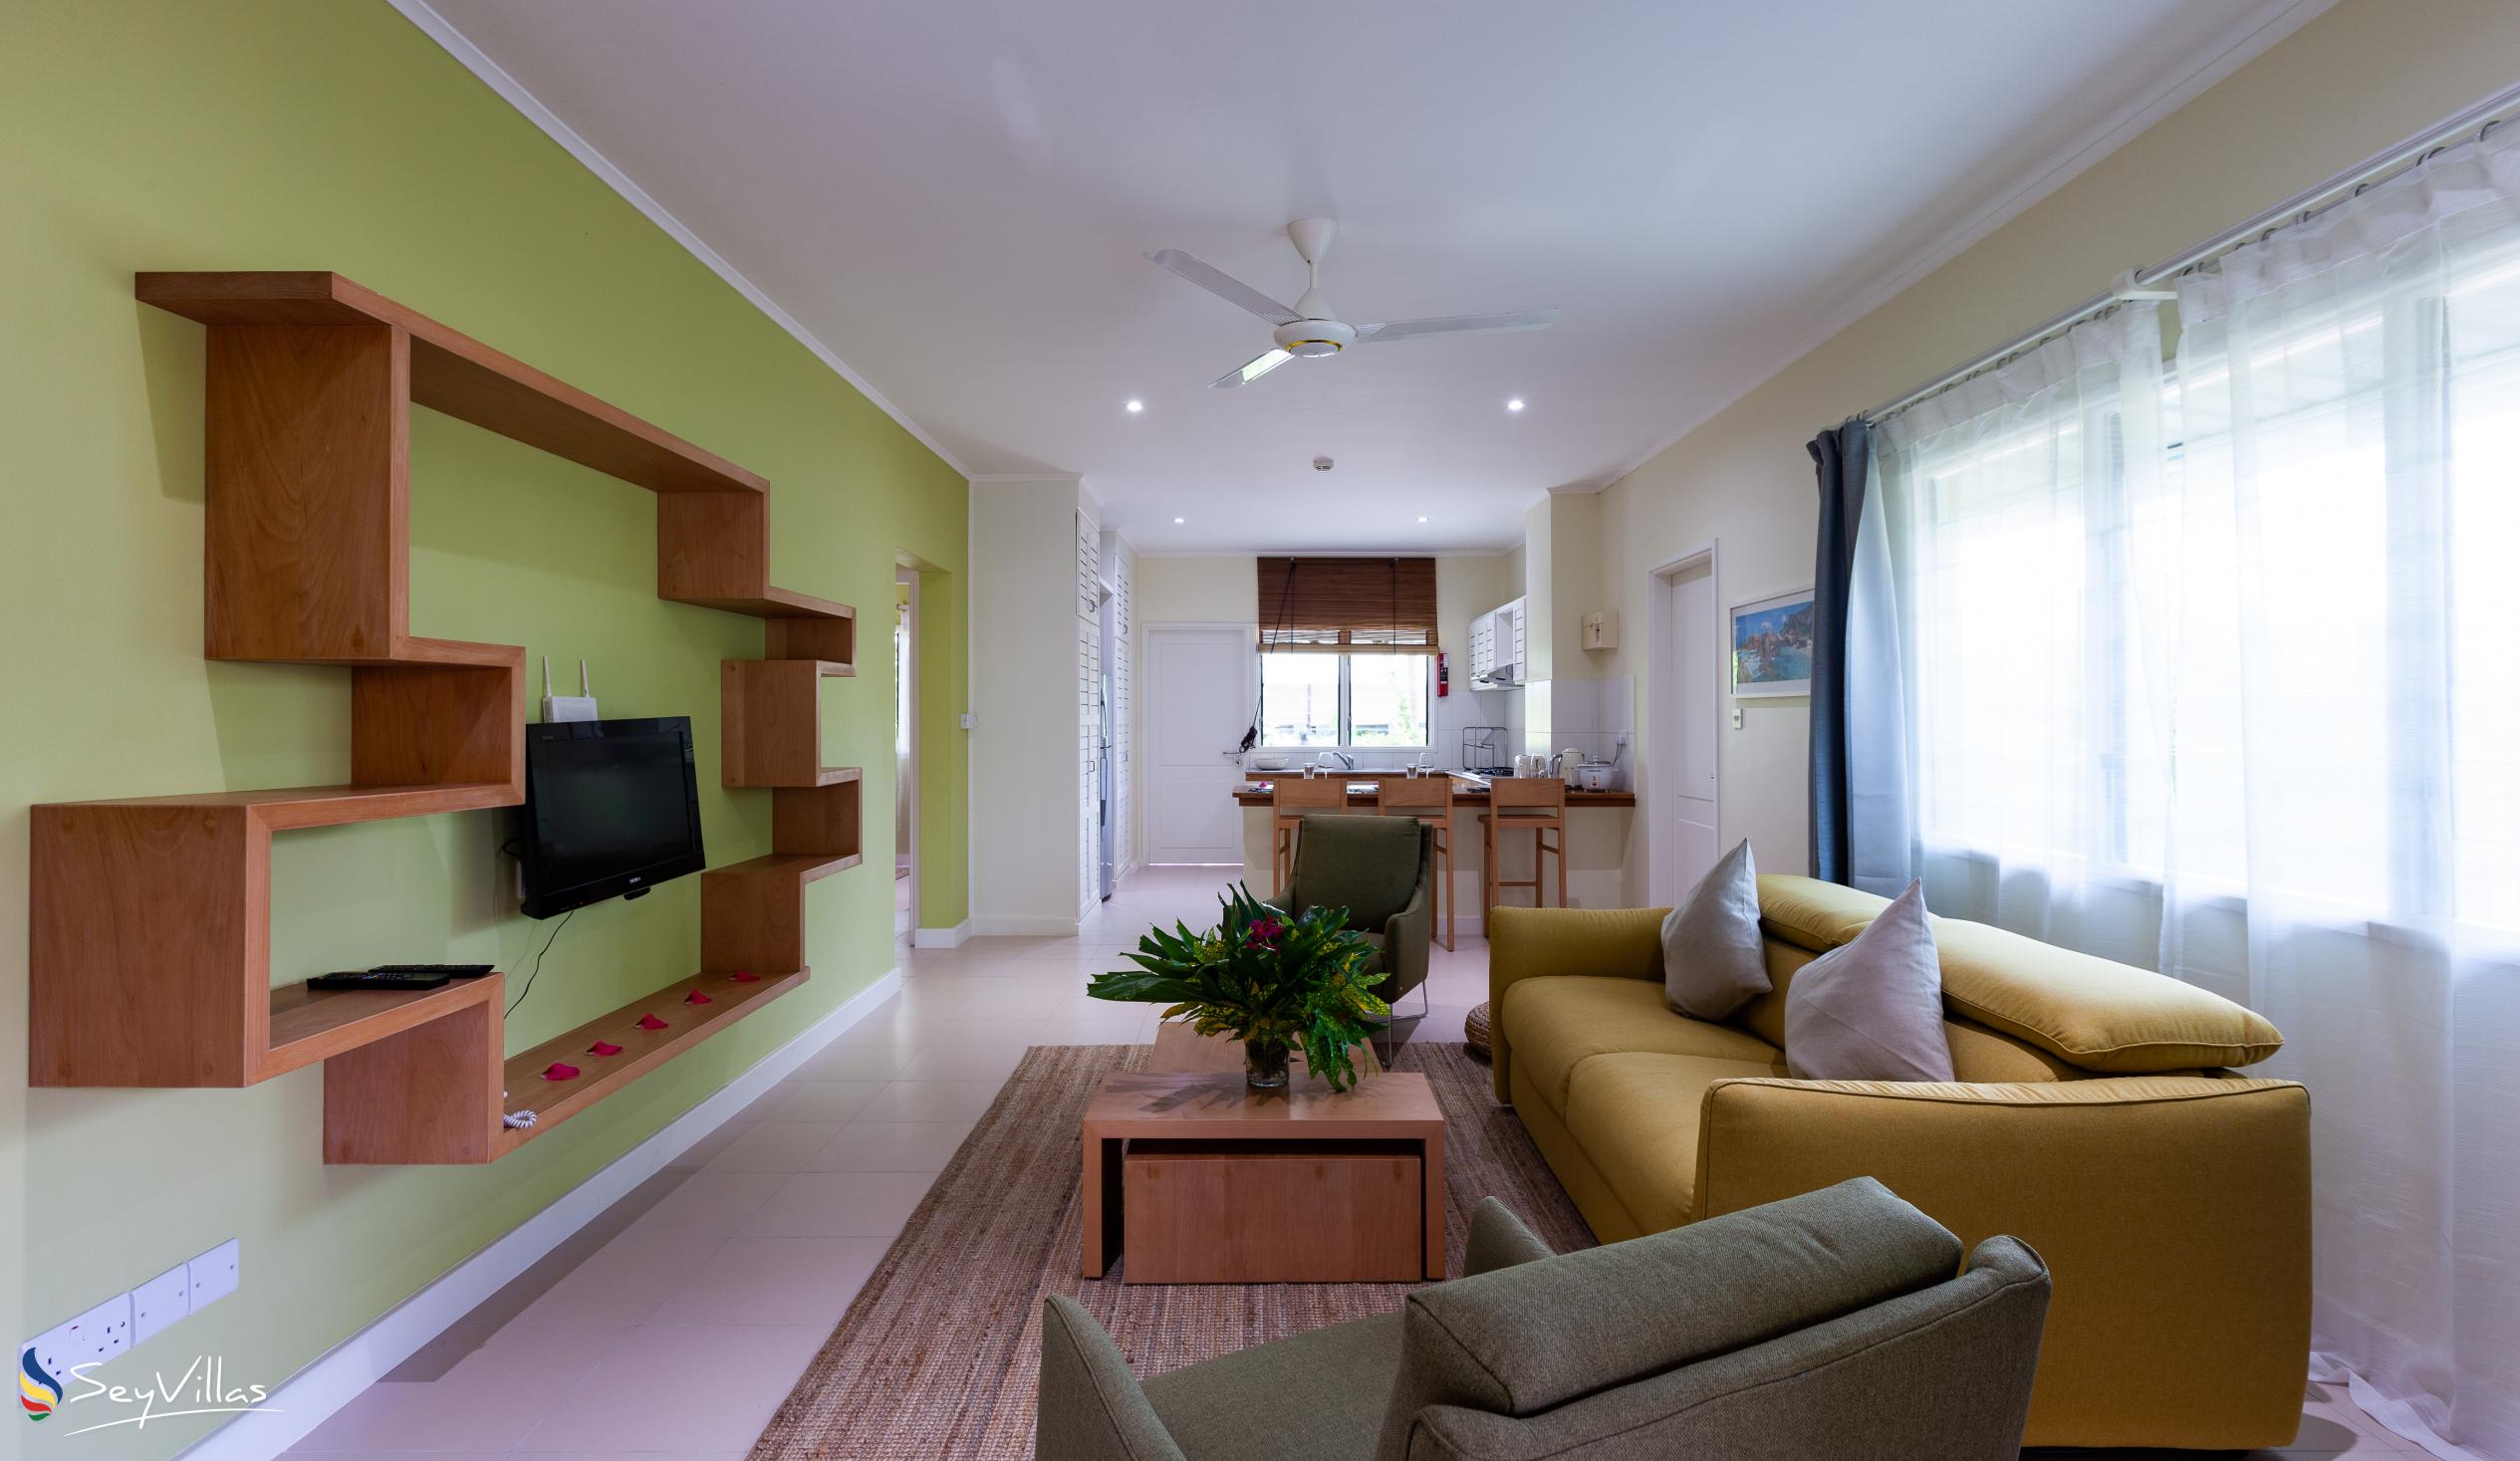 Foto 37: Residence Praslinoise - Familienappartement mit 2 Schlafzimmern (EG) - Praslin (Seychellen)